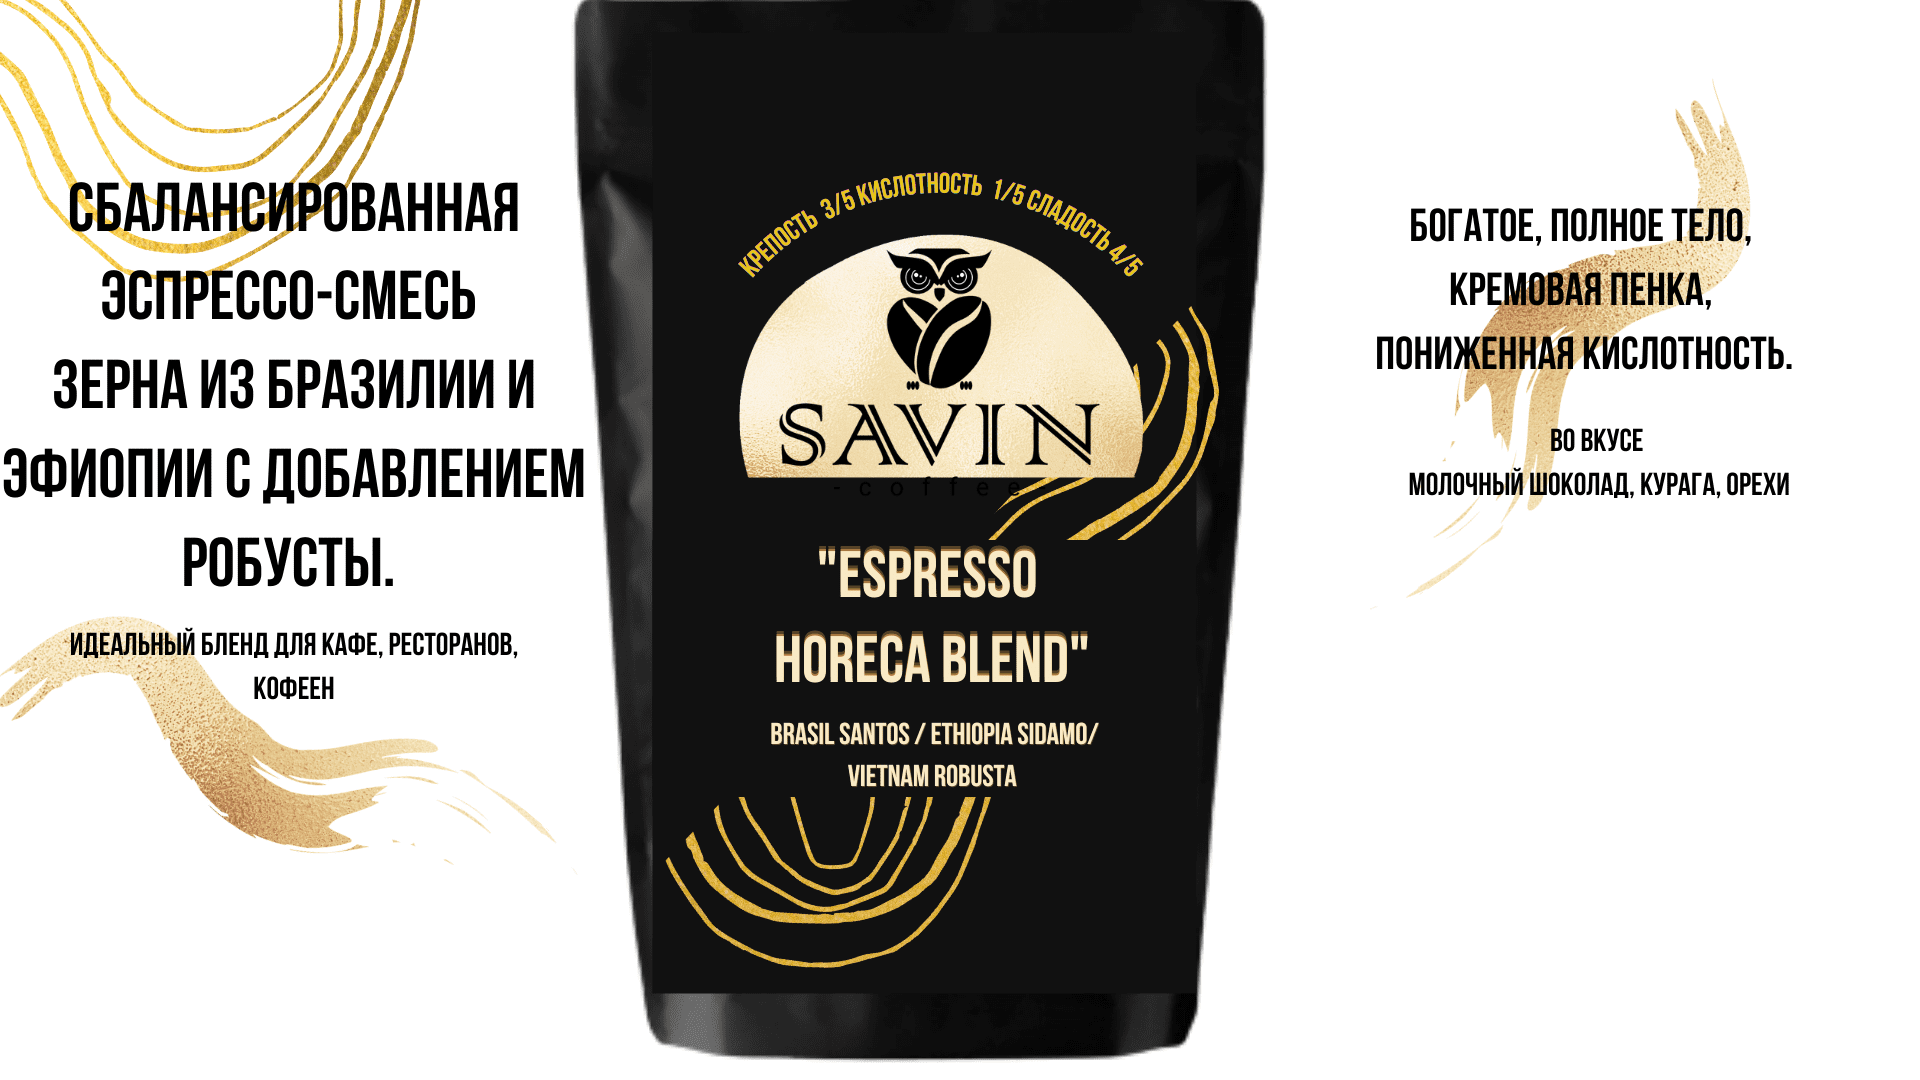 Espresso HoReCa Blend, Crema Aroma